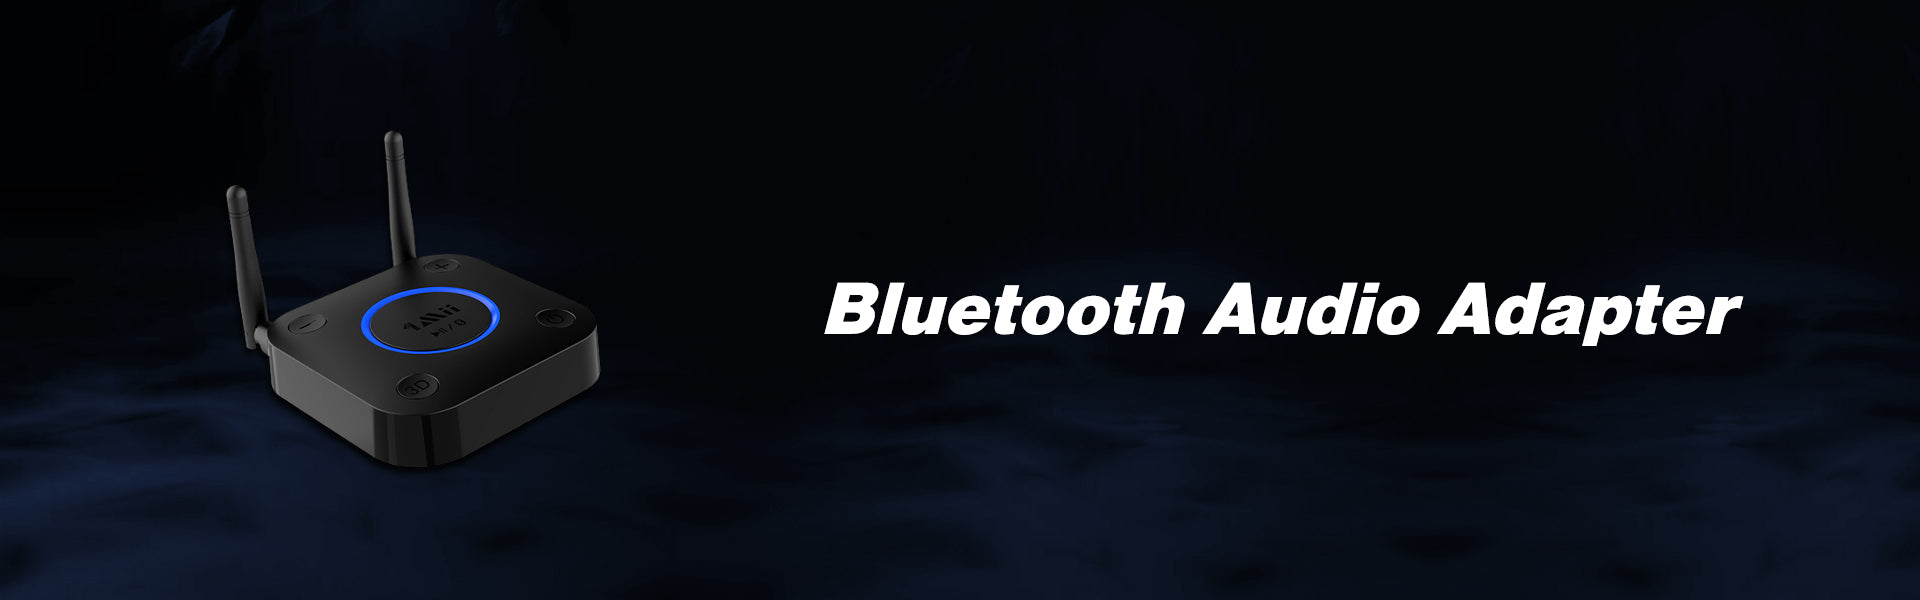 1Mii Flugzeug Bluetooth 5.3 Adapter für Kopfhörer, 30Hrs Spielzeit